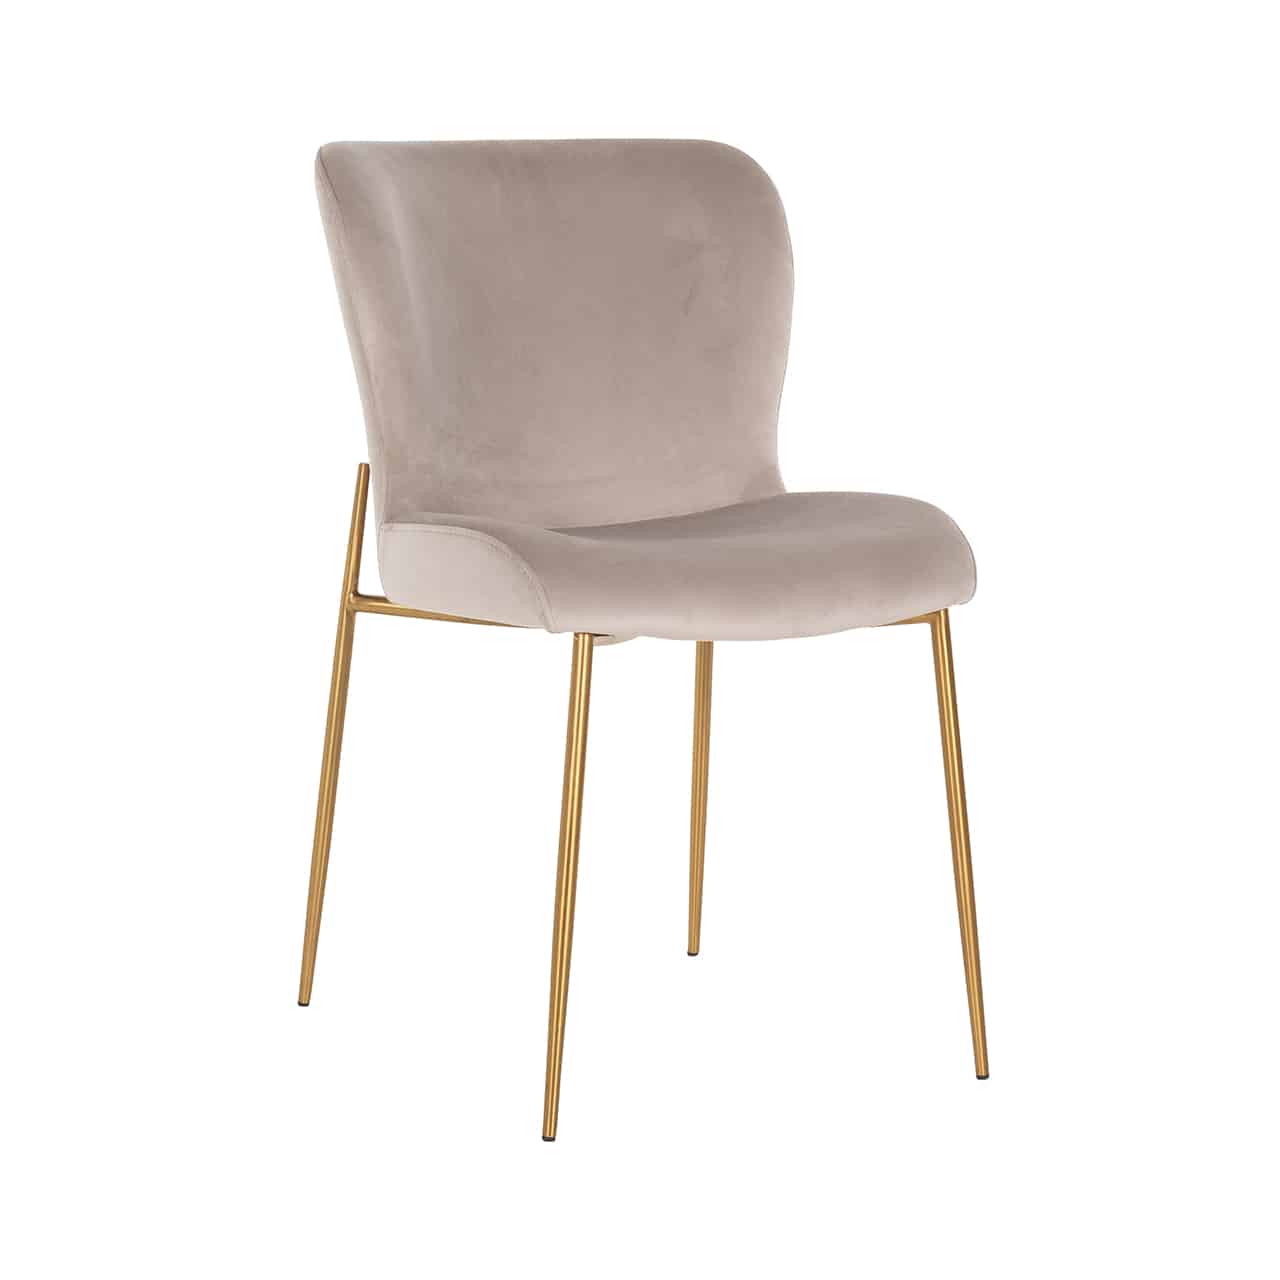 Vollpolsterstuhl mit einem Bezug aus khakifarbenem Samt; auf einem goldenen Gestell mit dünnen Beinen, darauf eine leicht ergonomisch geformte Sitzschale ohne Armlehnen.